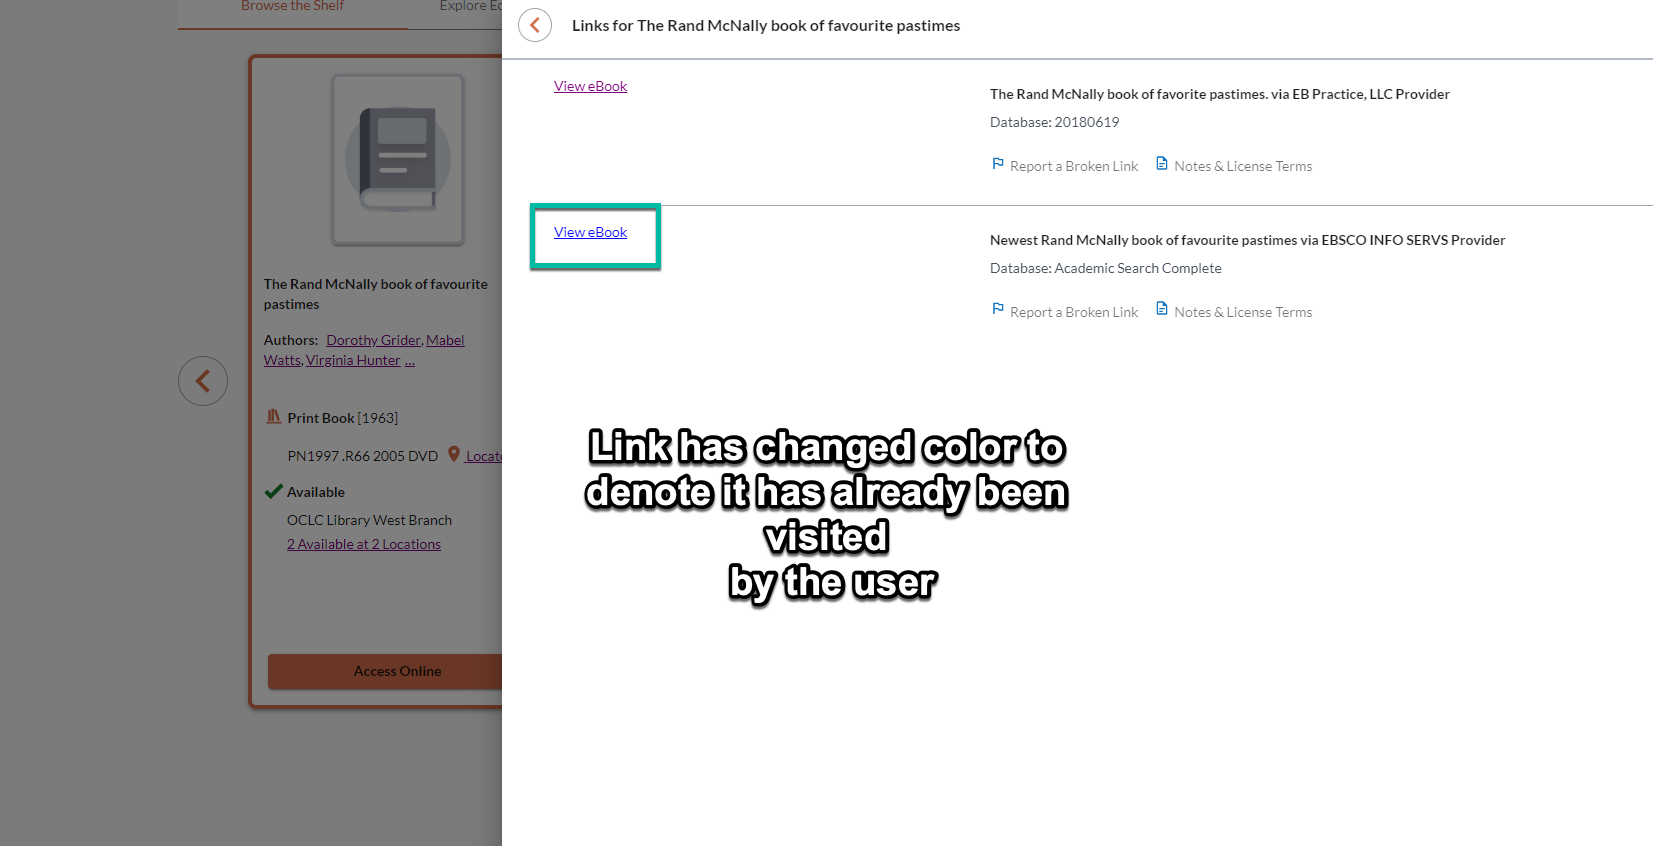 Capture d’écran de la section contenant des liens d’accès avec un lien déjà visité s’affichant dans une couleur différente des liens non visités. 